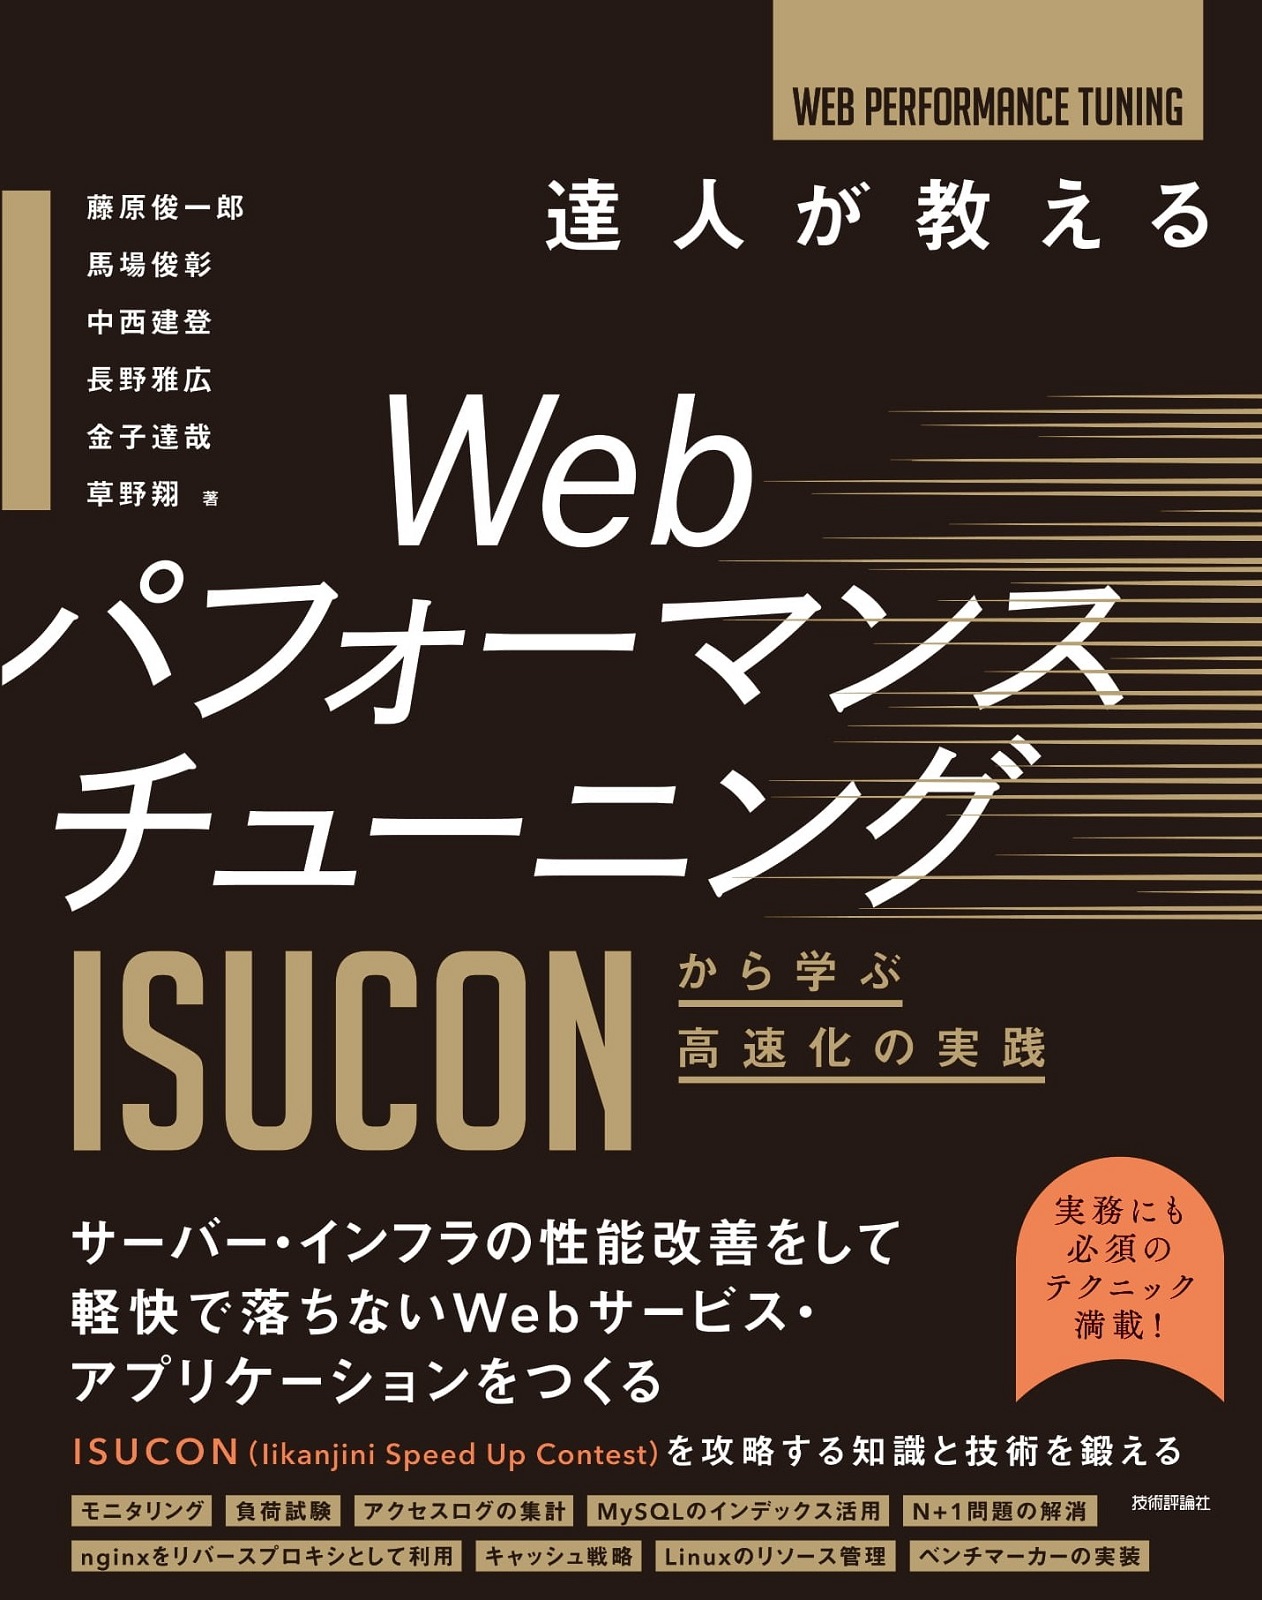 達人が教えるWebパフォーマンスチューニング 〜ISUCONから学ぶ高速化の 